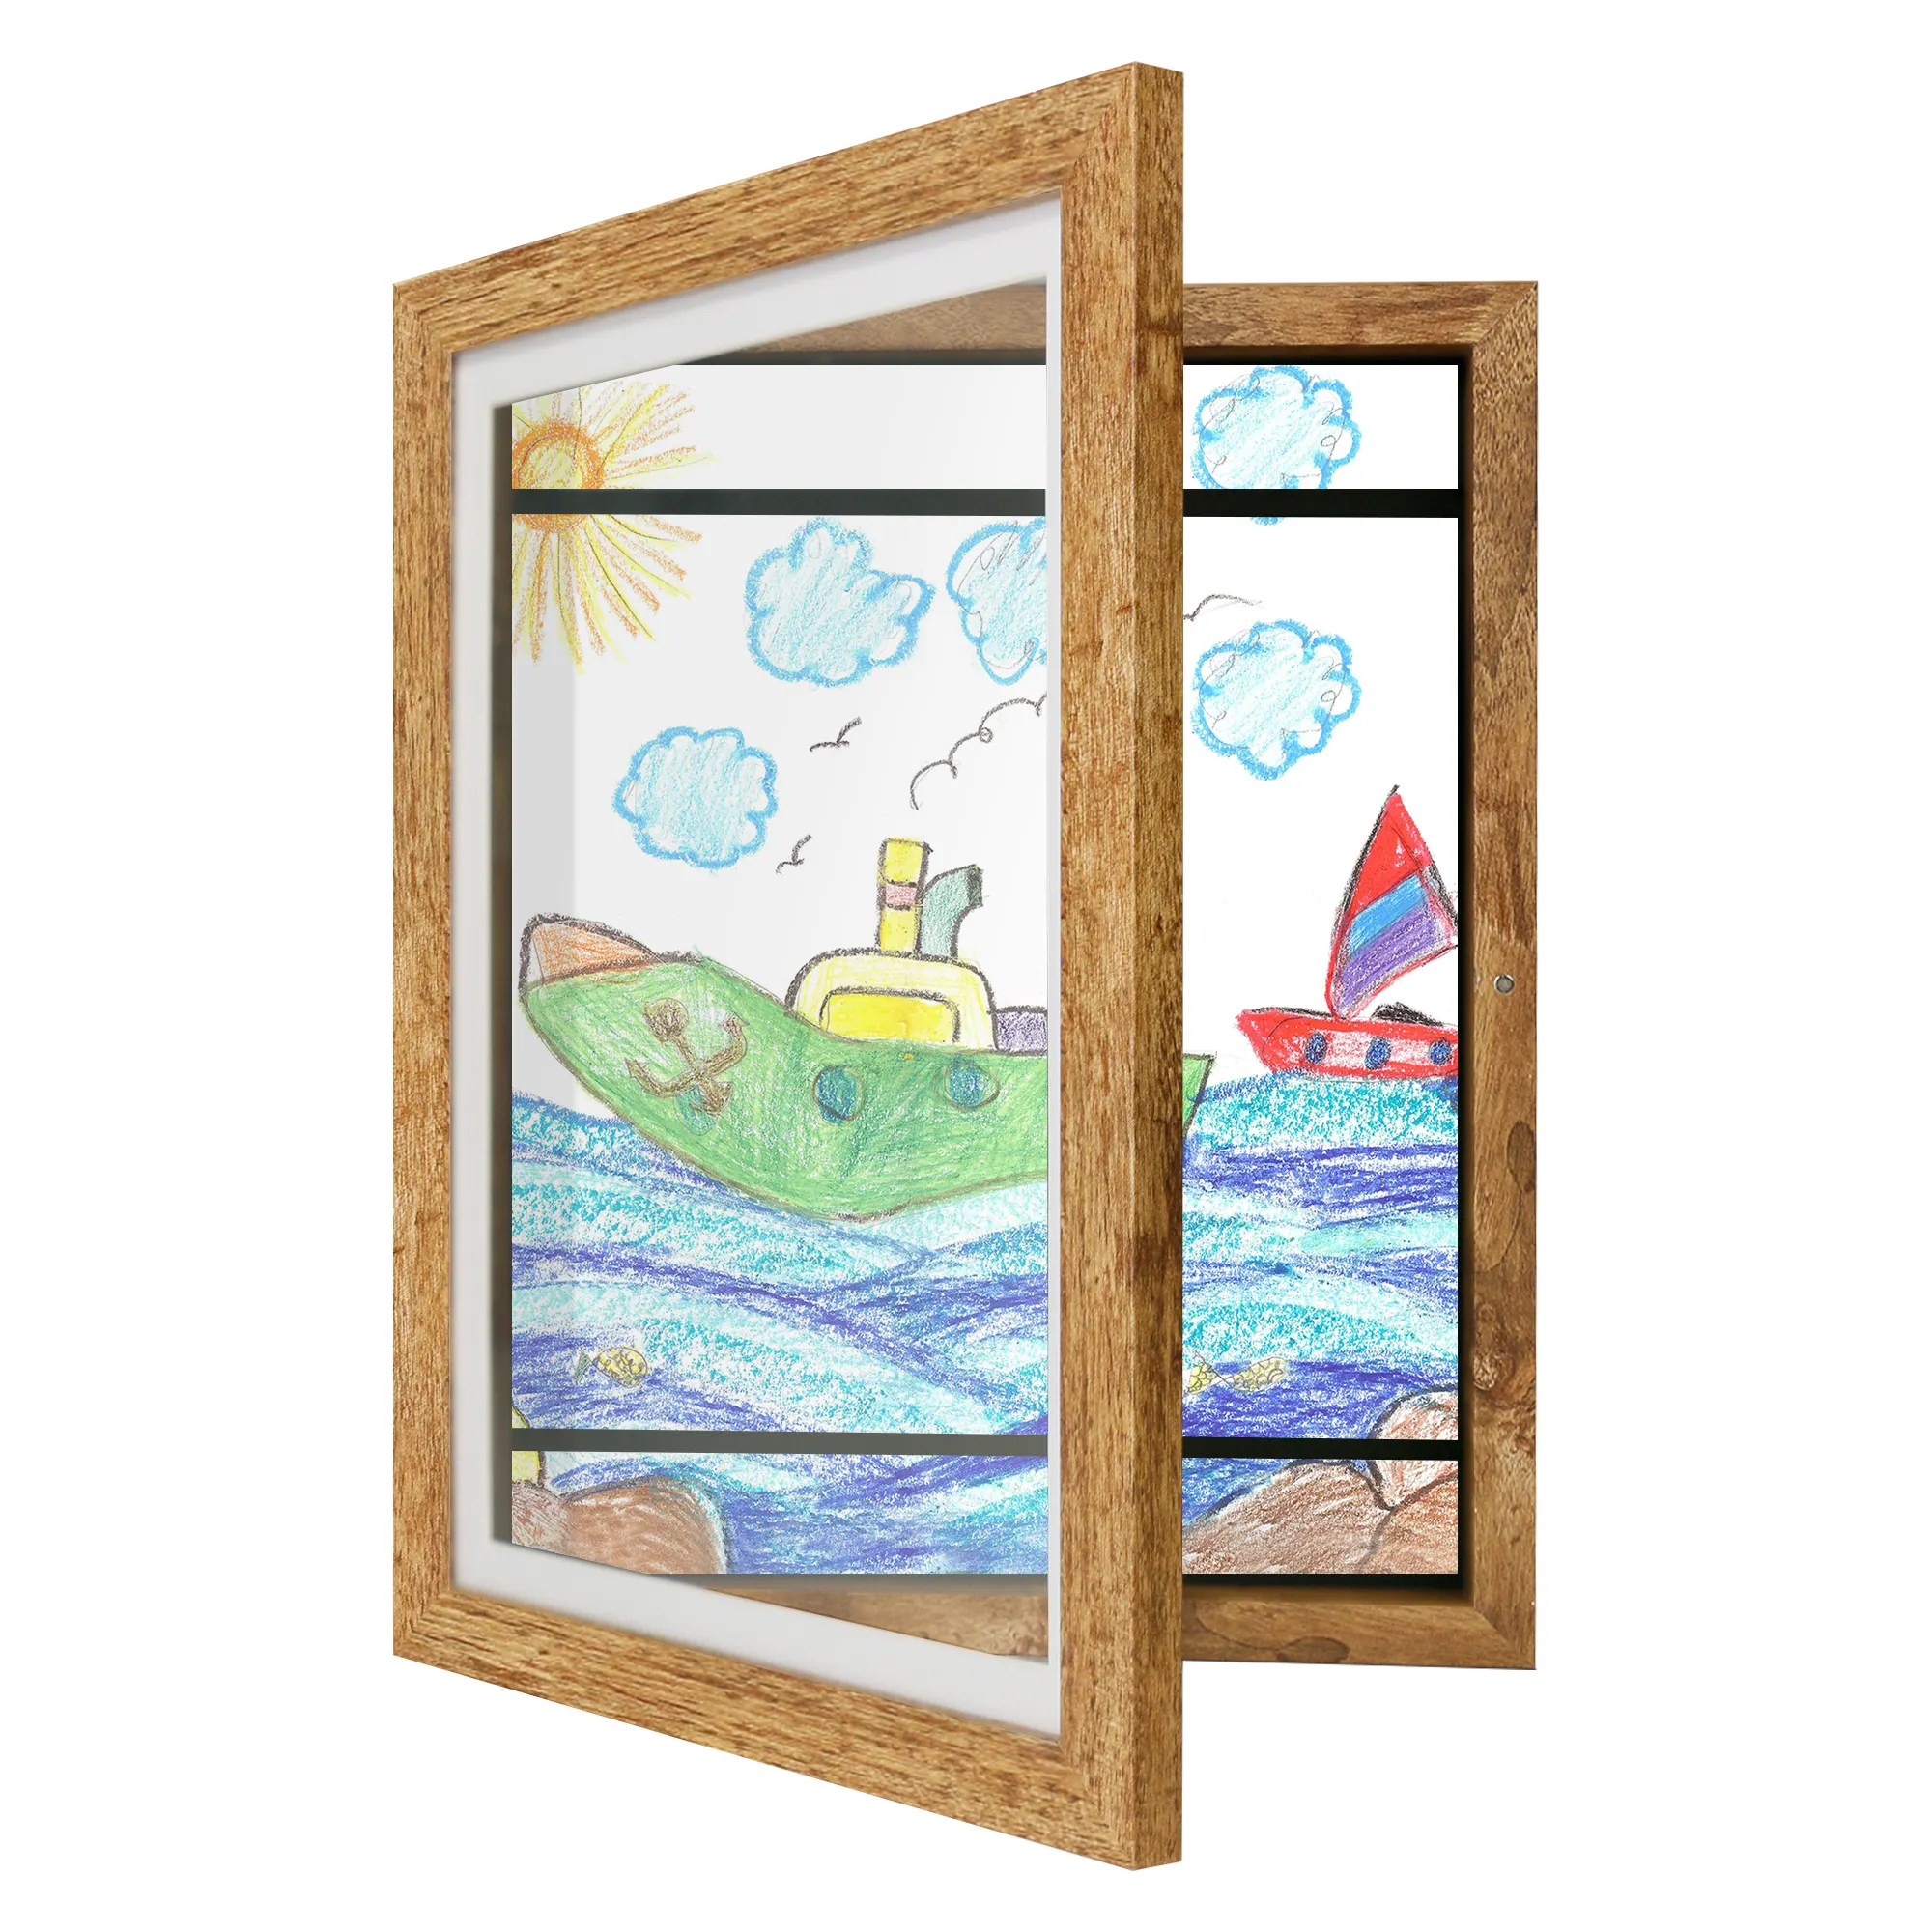 Crianças Artwork Picture Frame mutável em preto madeira rosa azul com vidro resistente a estilhaços crianças arte quadro